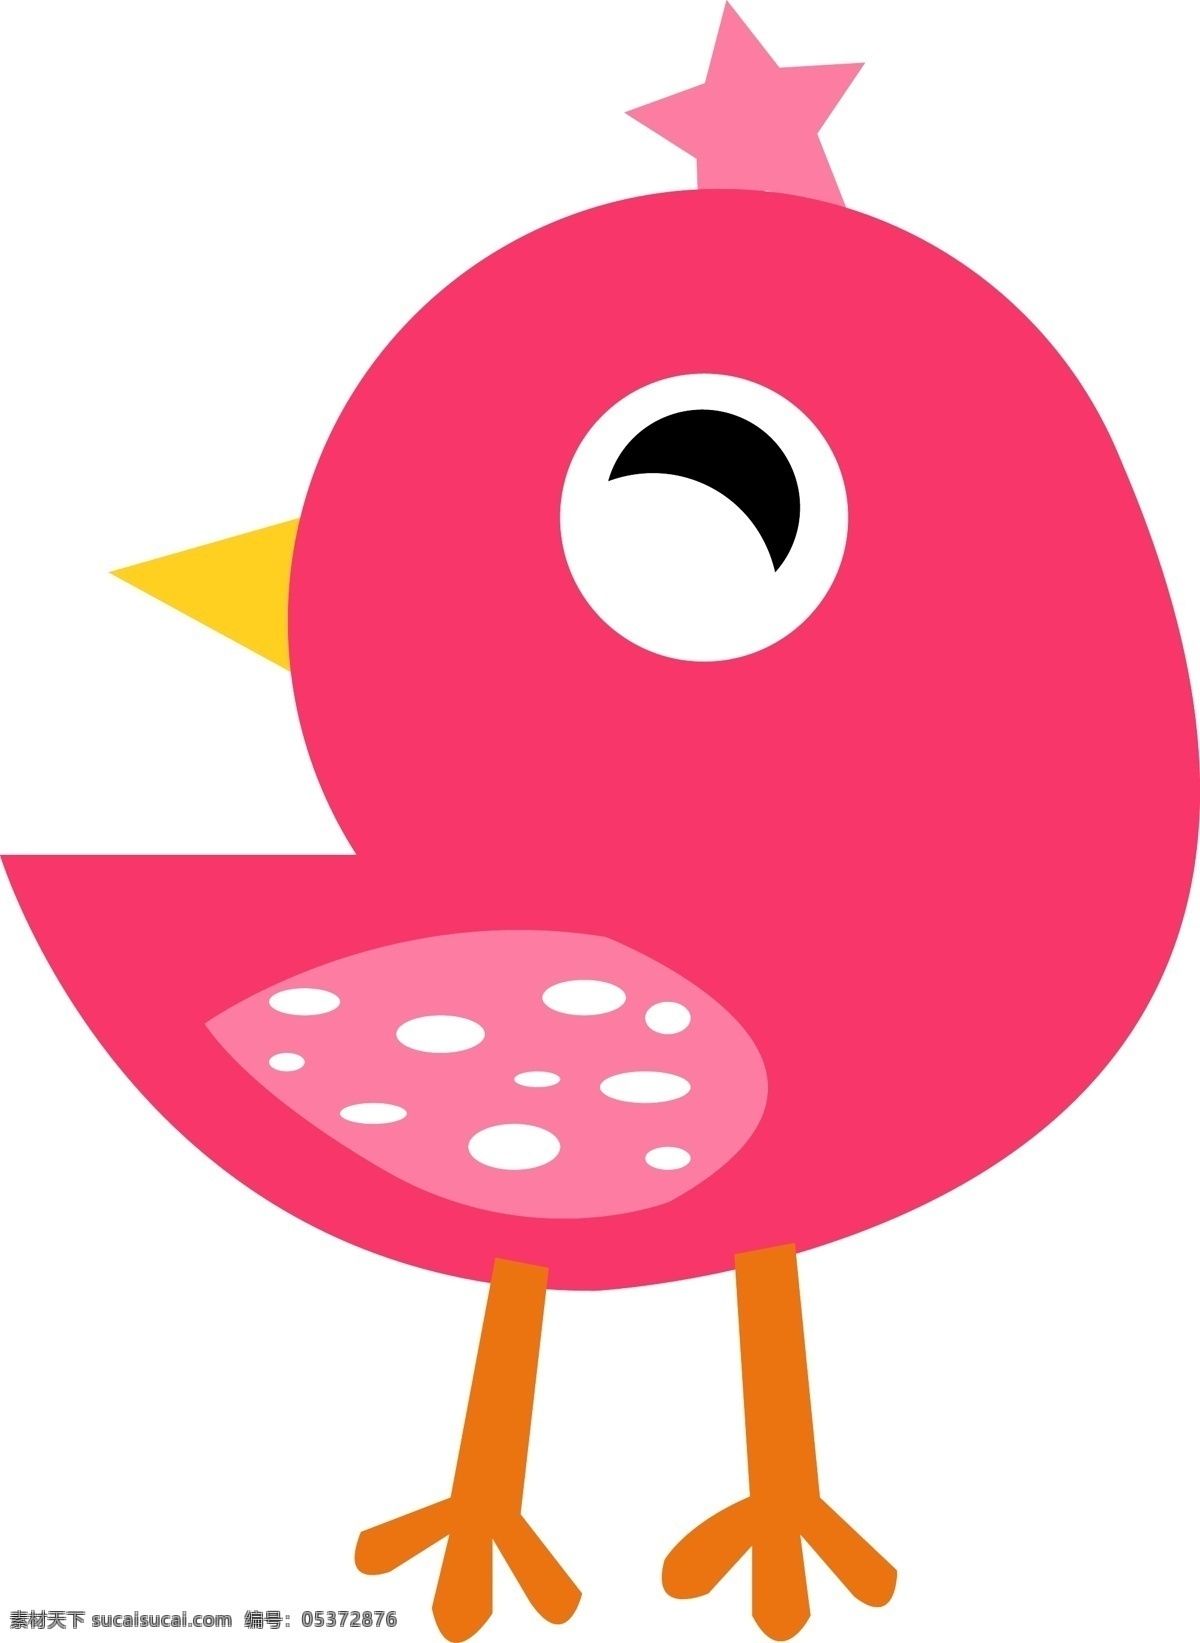 可爱 卡通 小鸟 免 抠 卡通的小鸟 可爱的小鸟 红色 粉色 简约的图形 简笔的小鸟 简单的小鸟